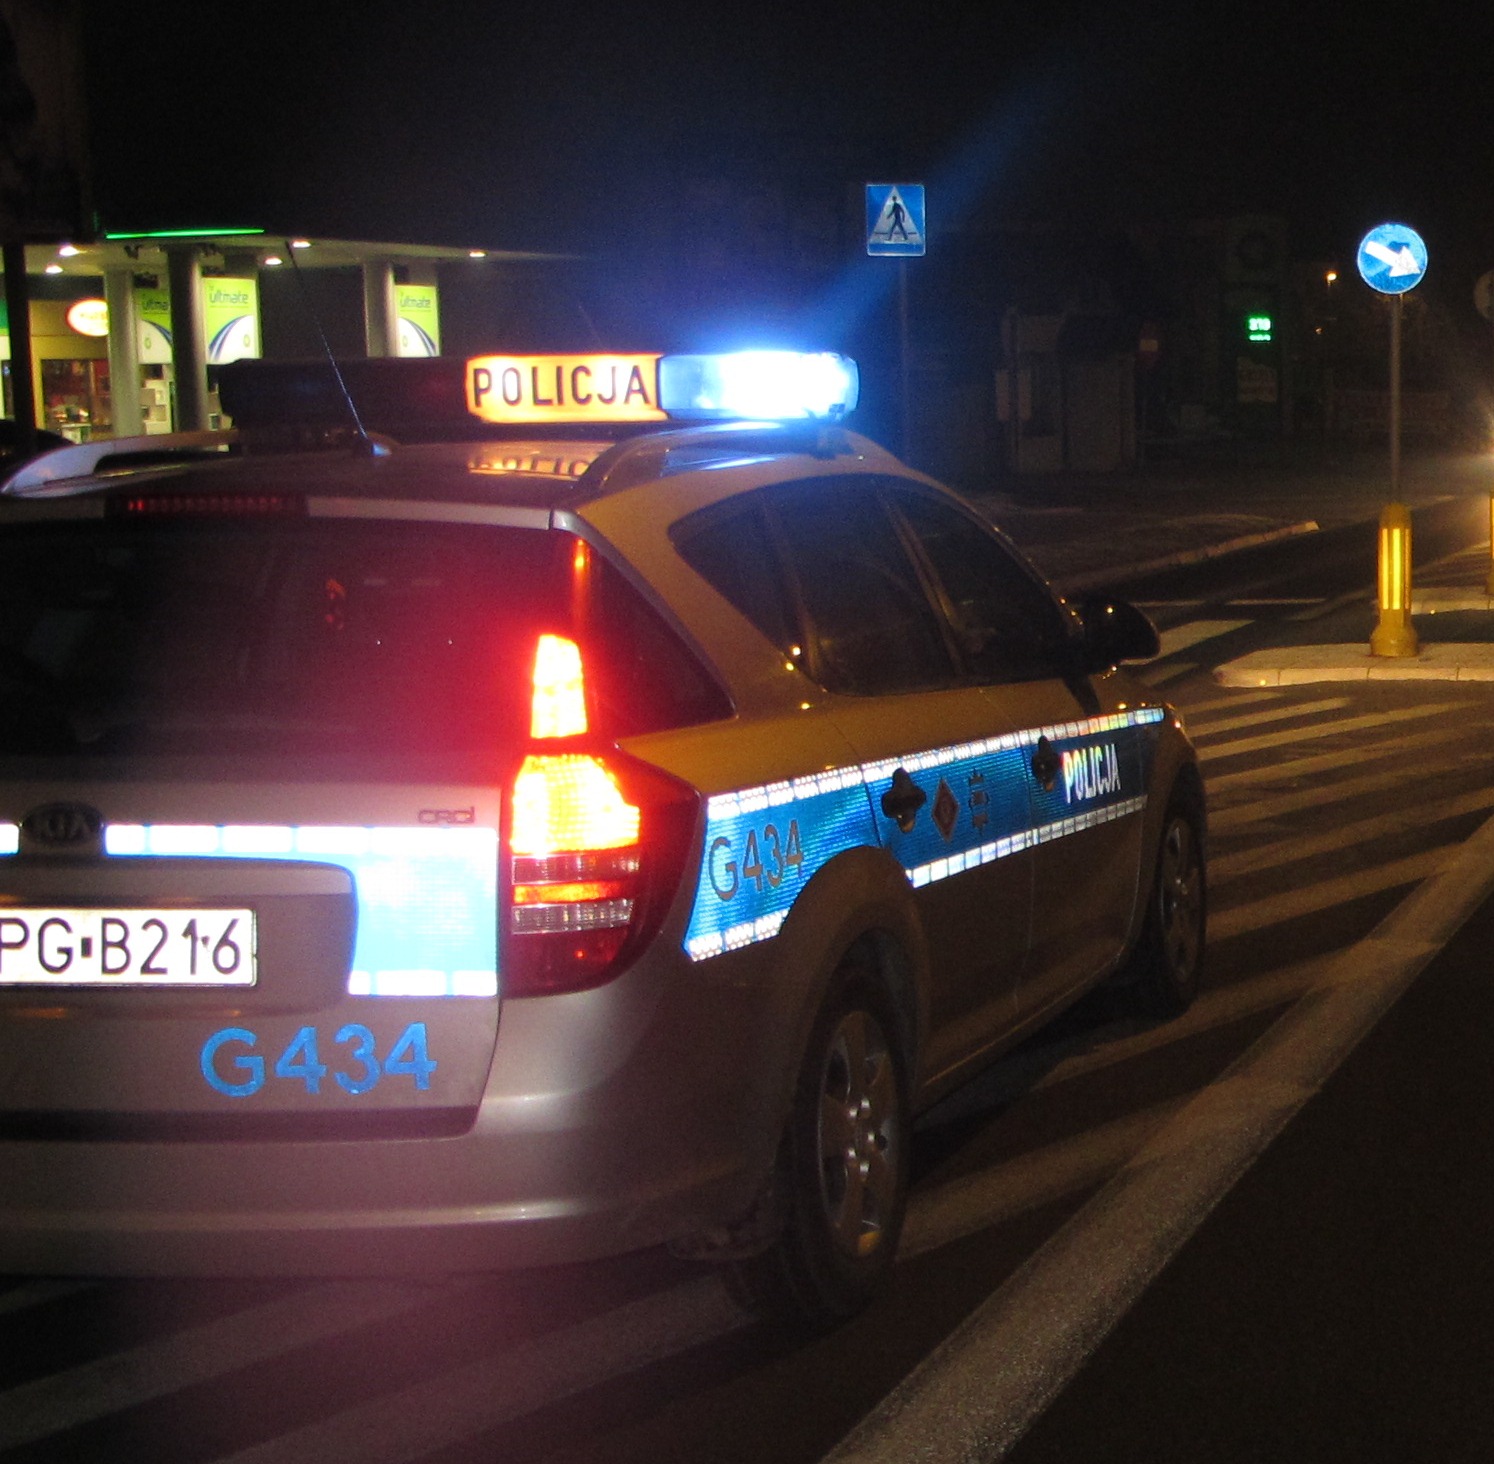 KPP Oświęcim radiowóz jadący ulicą na sygnałach w nocy